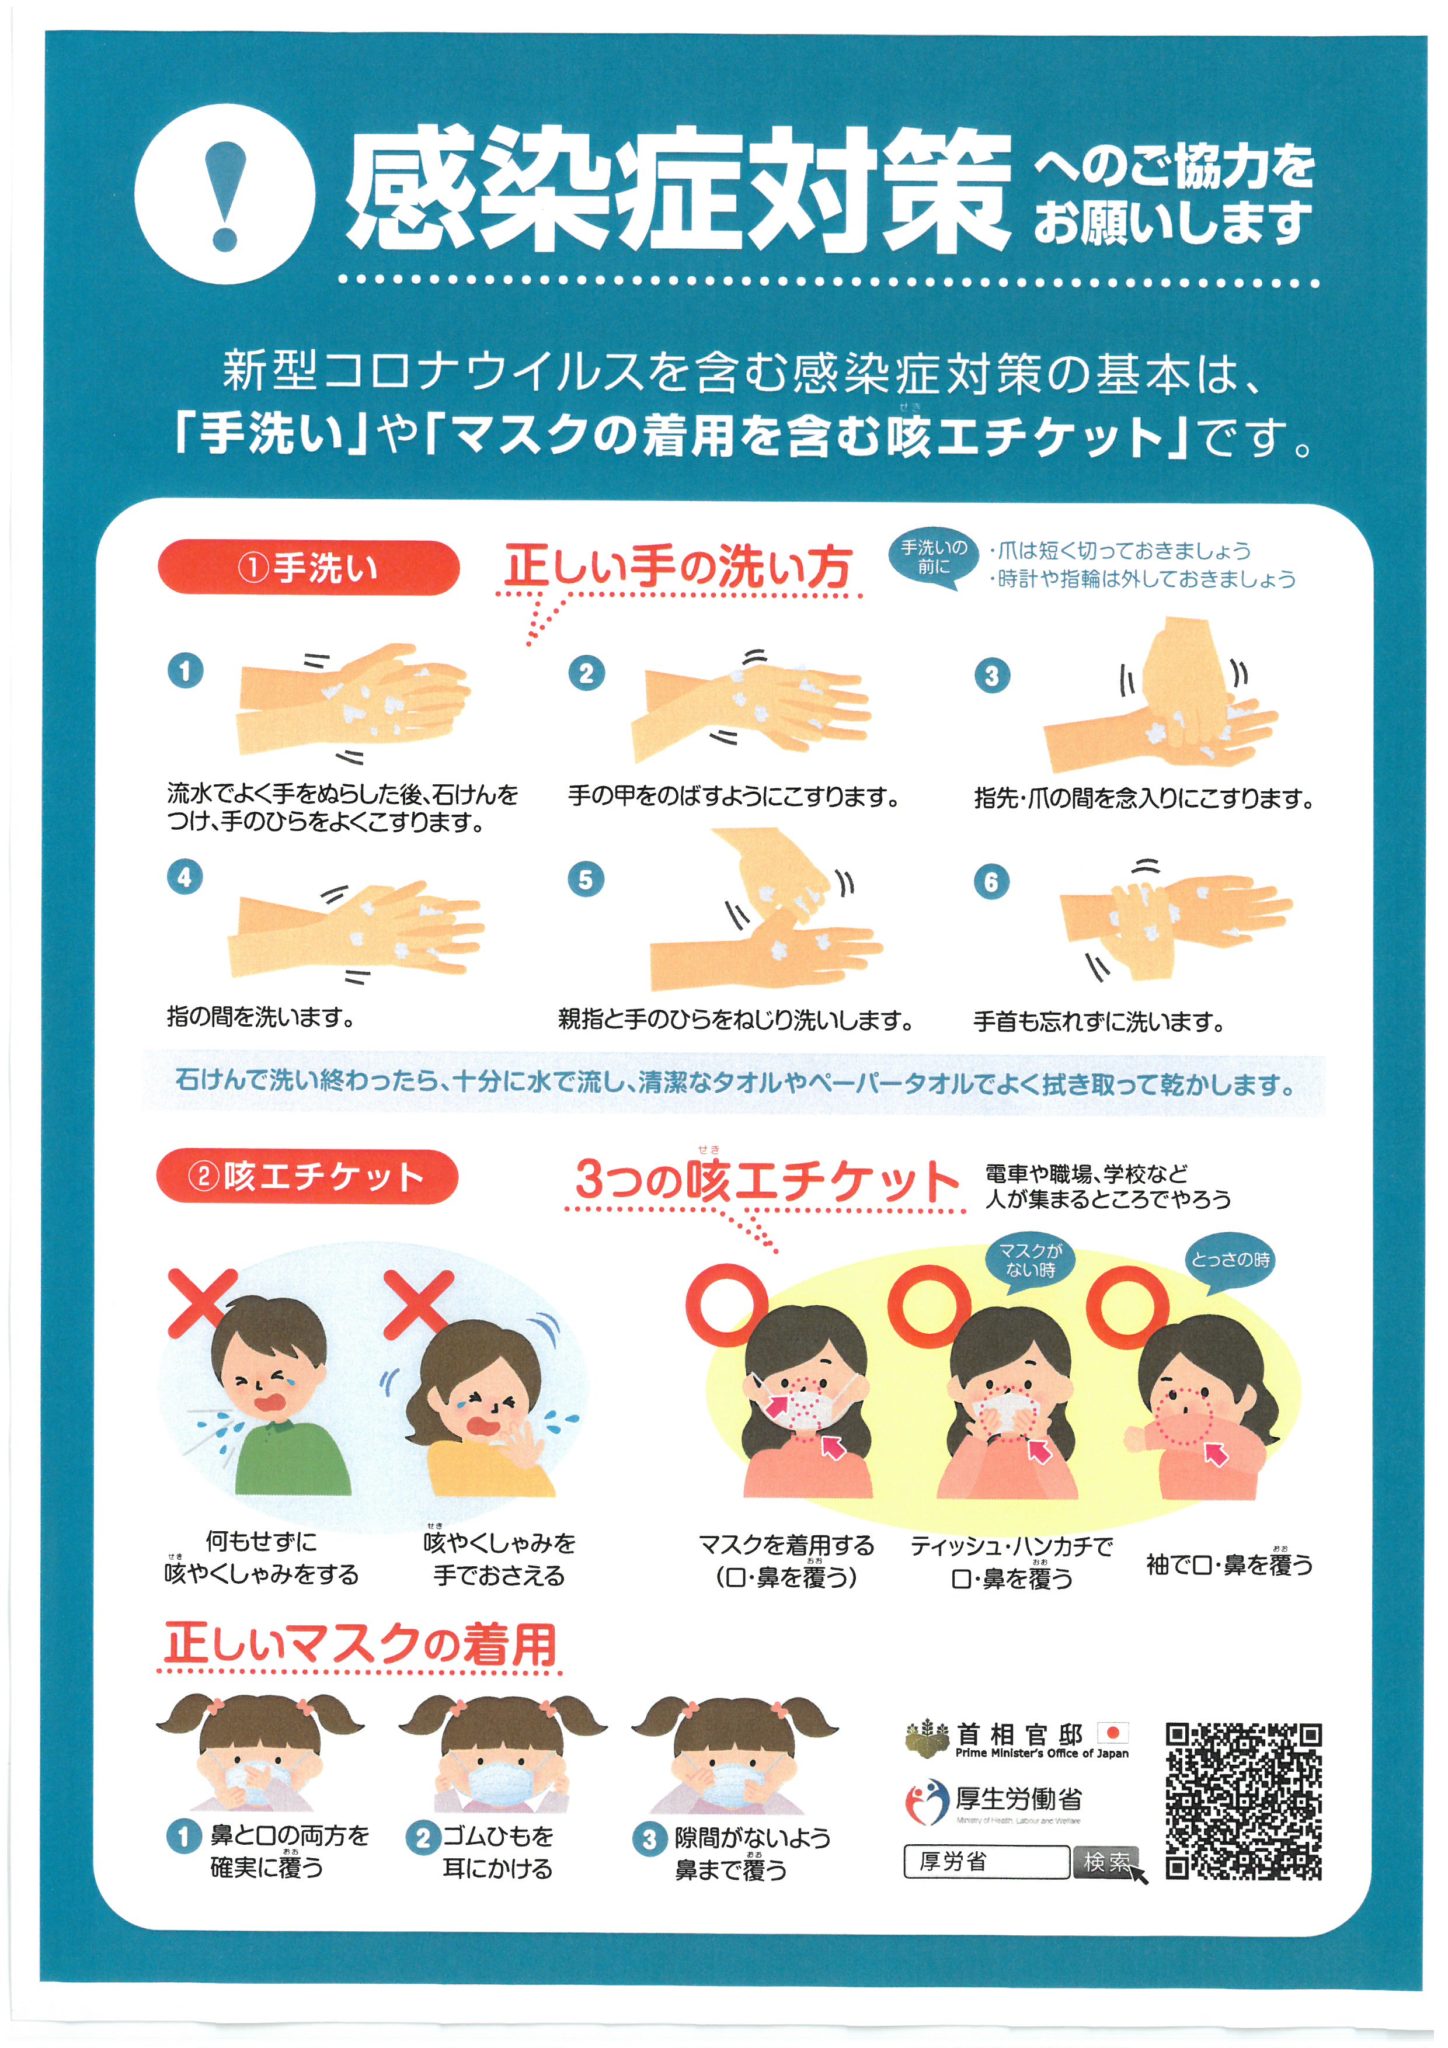 新型コロナウイルス感染症対策 | お知らせ | 熊本県食肉生活 ...